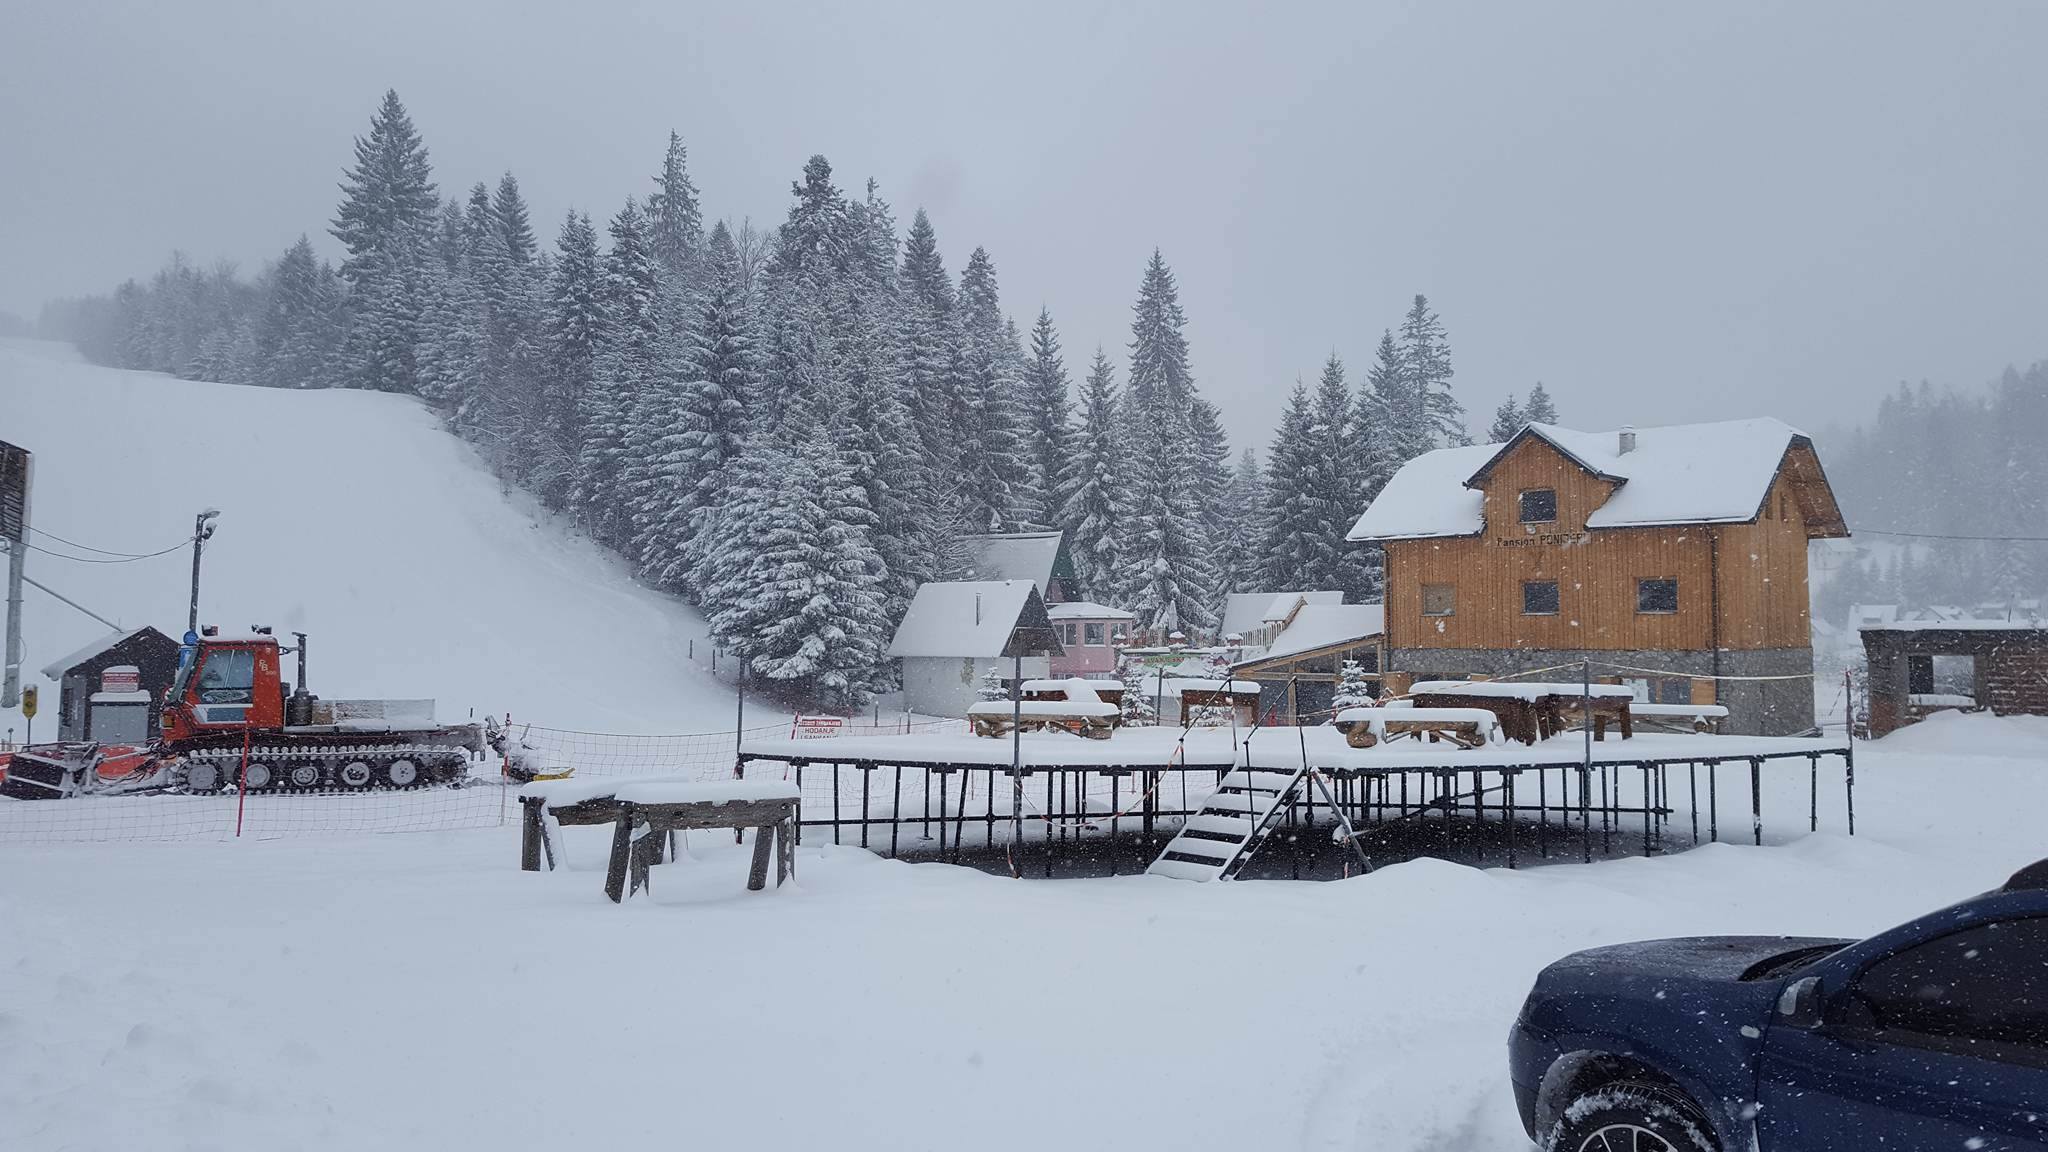 Nastavlja se sezona skijanja na Ponijerima – Ski lift u funkciji od sutra